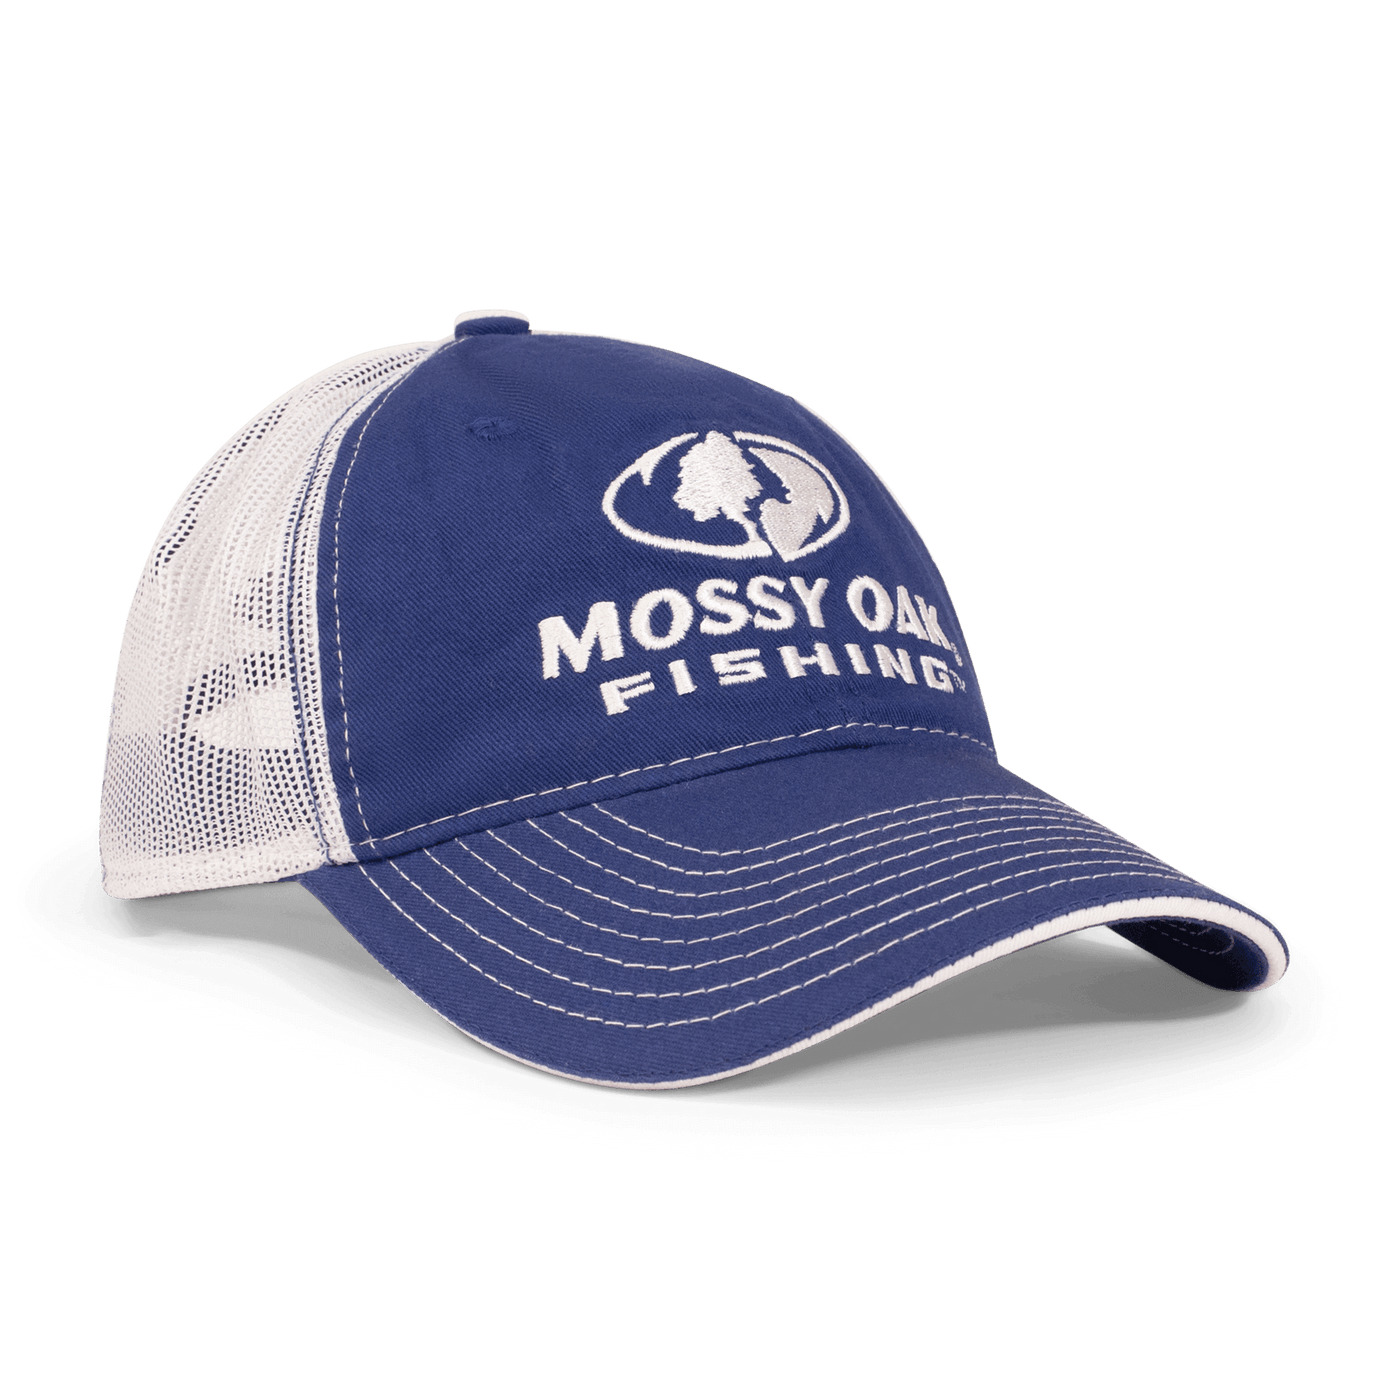 Mossy Oak Fishing Hat